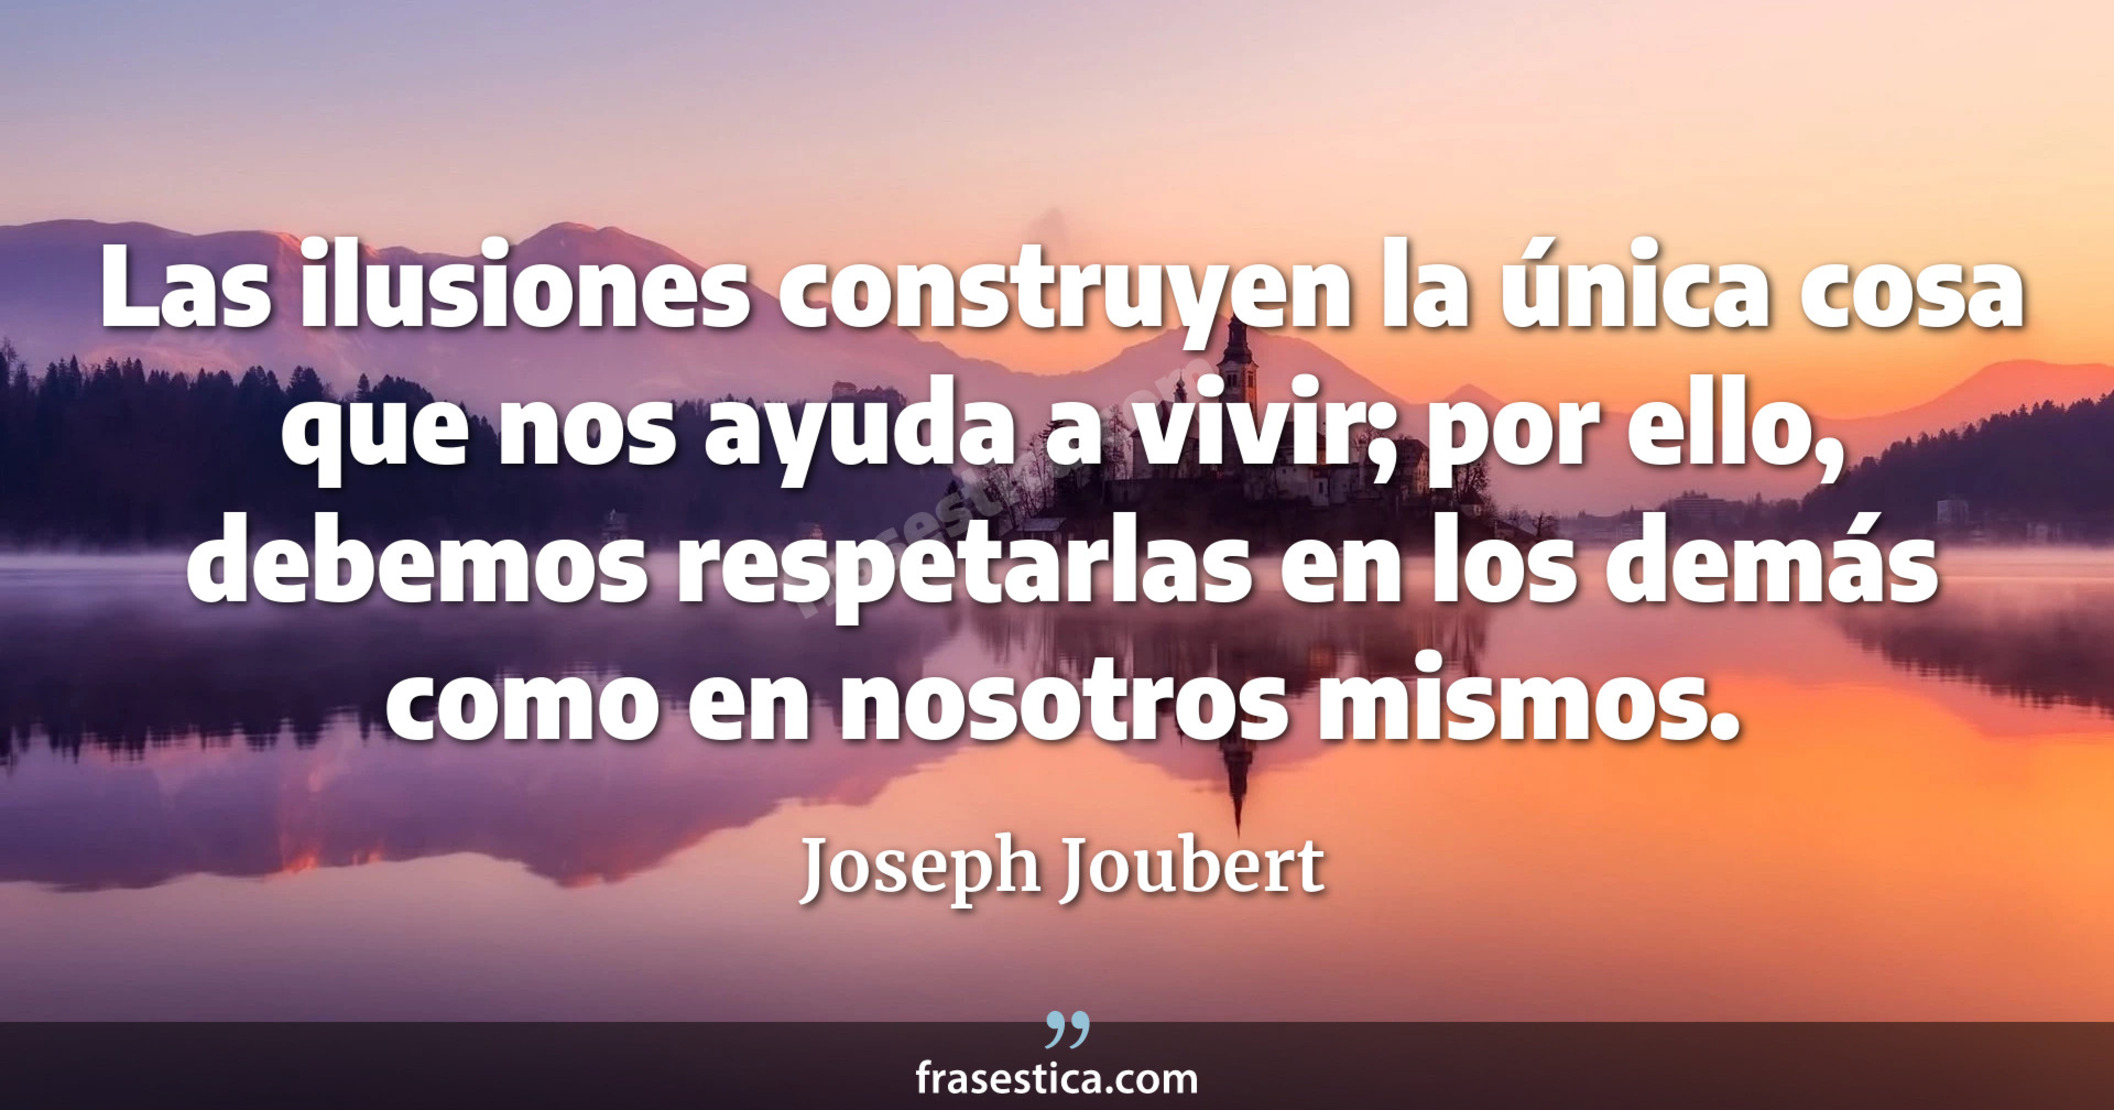 Las ilusiones construyen la única cosa que nos ayuda a vivir; por ello, debemos respetarlas en los demás como en nosotros mismos. - Joseph Joubert